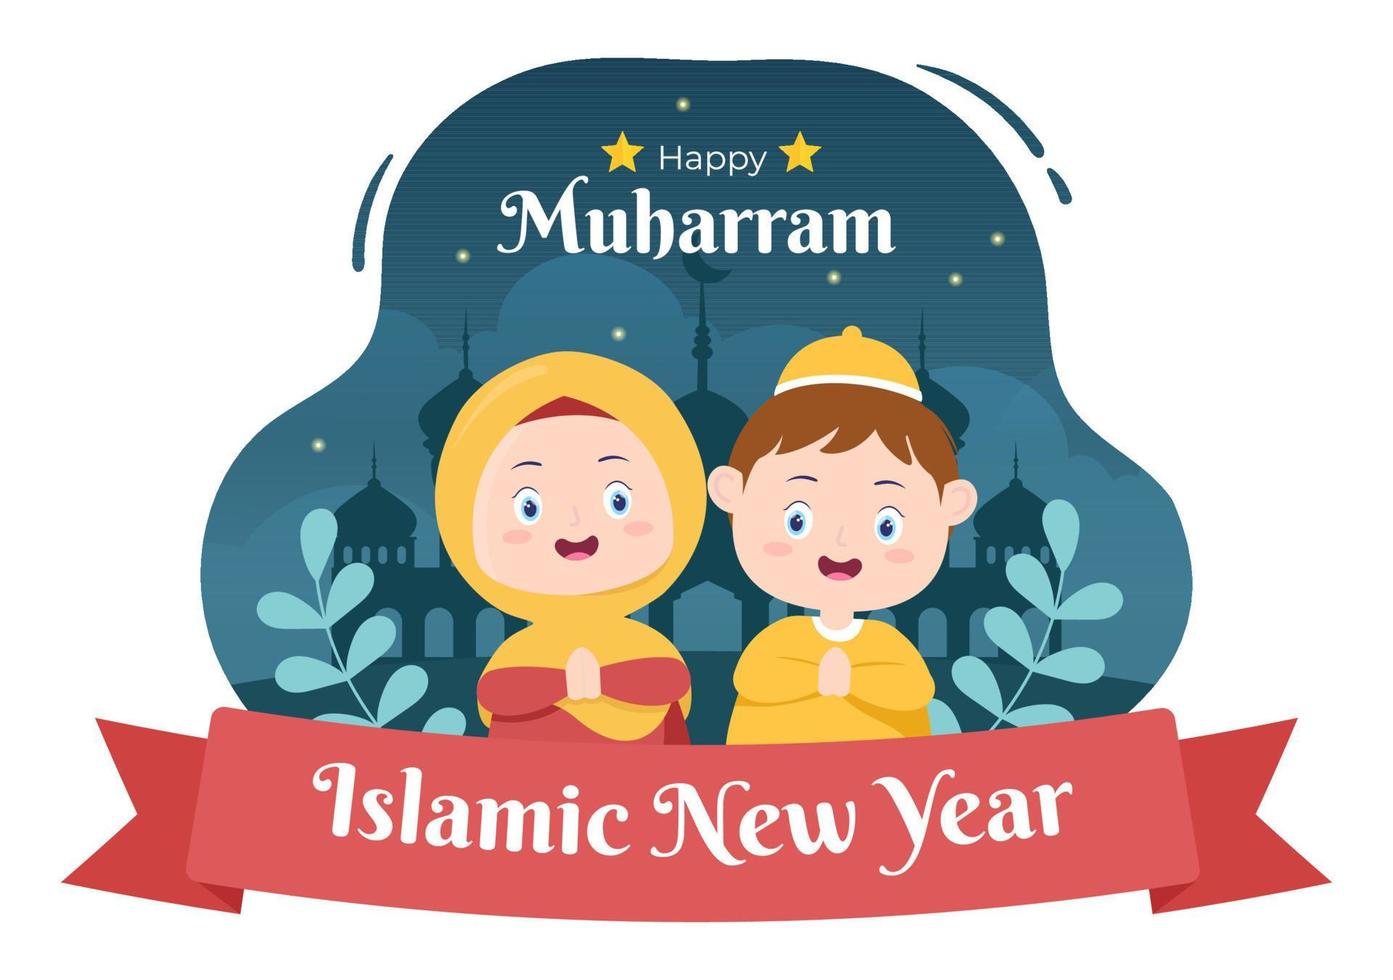 islamisk nyårsdag eller 1 muharram vektorbakgrundsillustration av muslimsk familj som firar kan användas för gratulationskort eller inbjudan vektor